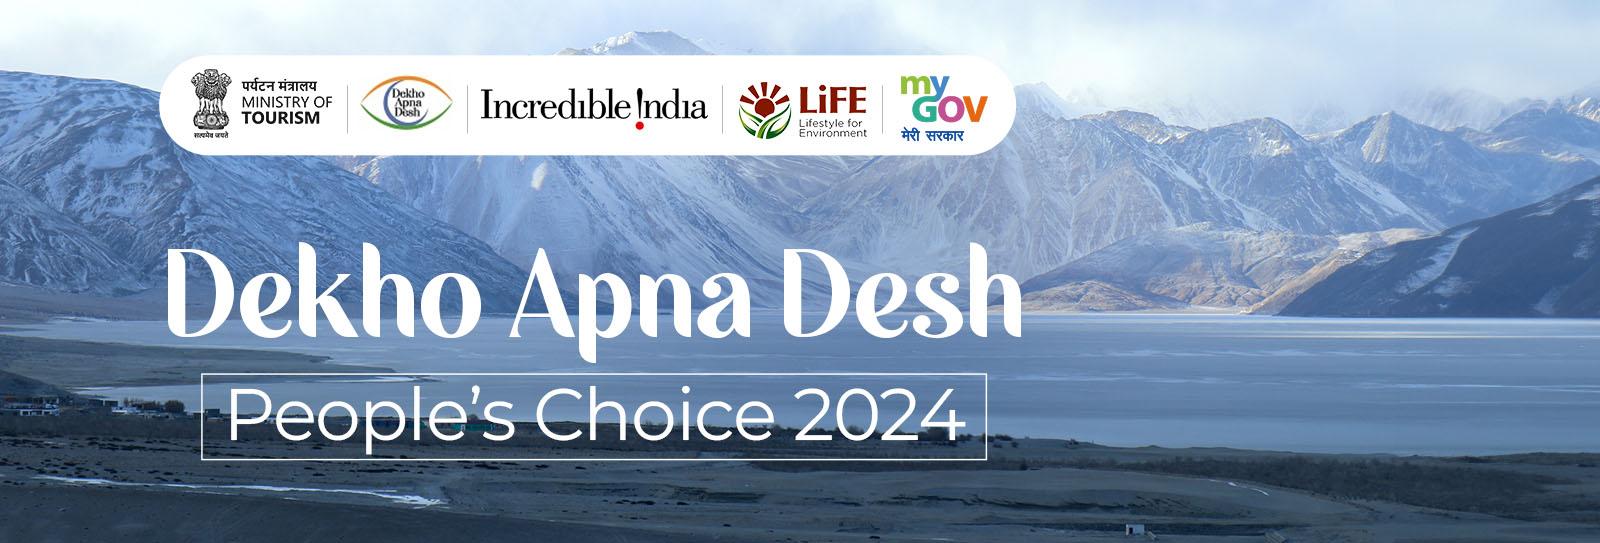 Dekho Apna Desh, People’s Choice 2024